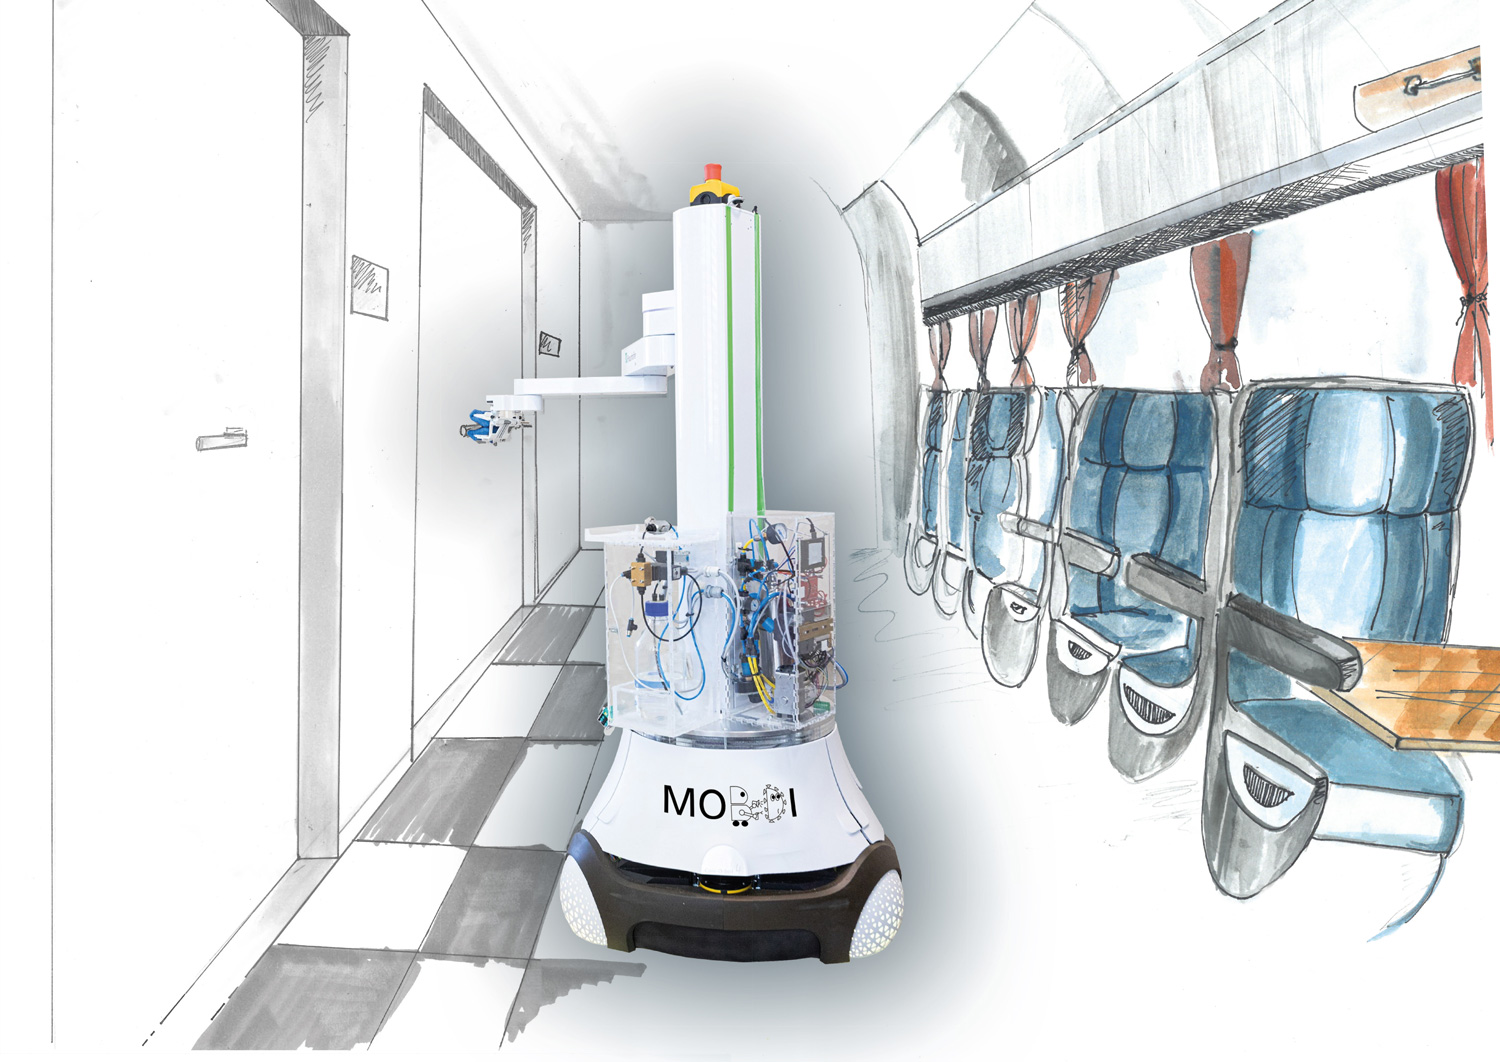 Illustration vom Desinfektionsroboter MobDi für den Einsatz in einem Gebäude und Verkehrsmittel.